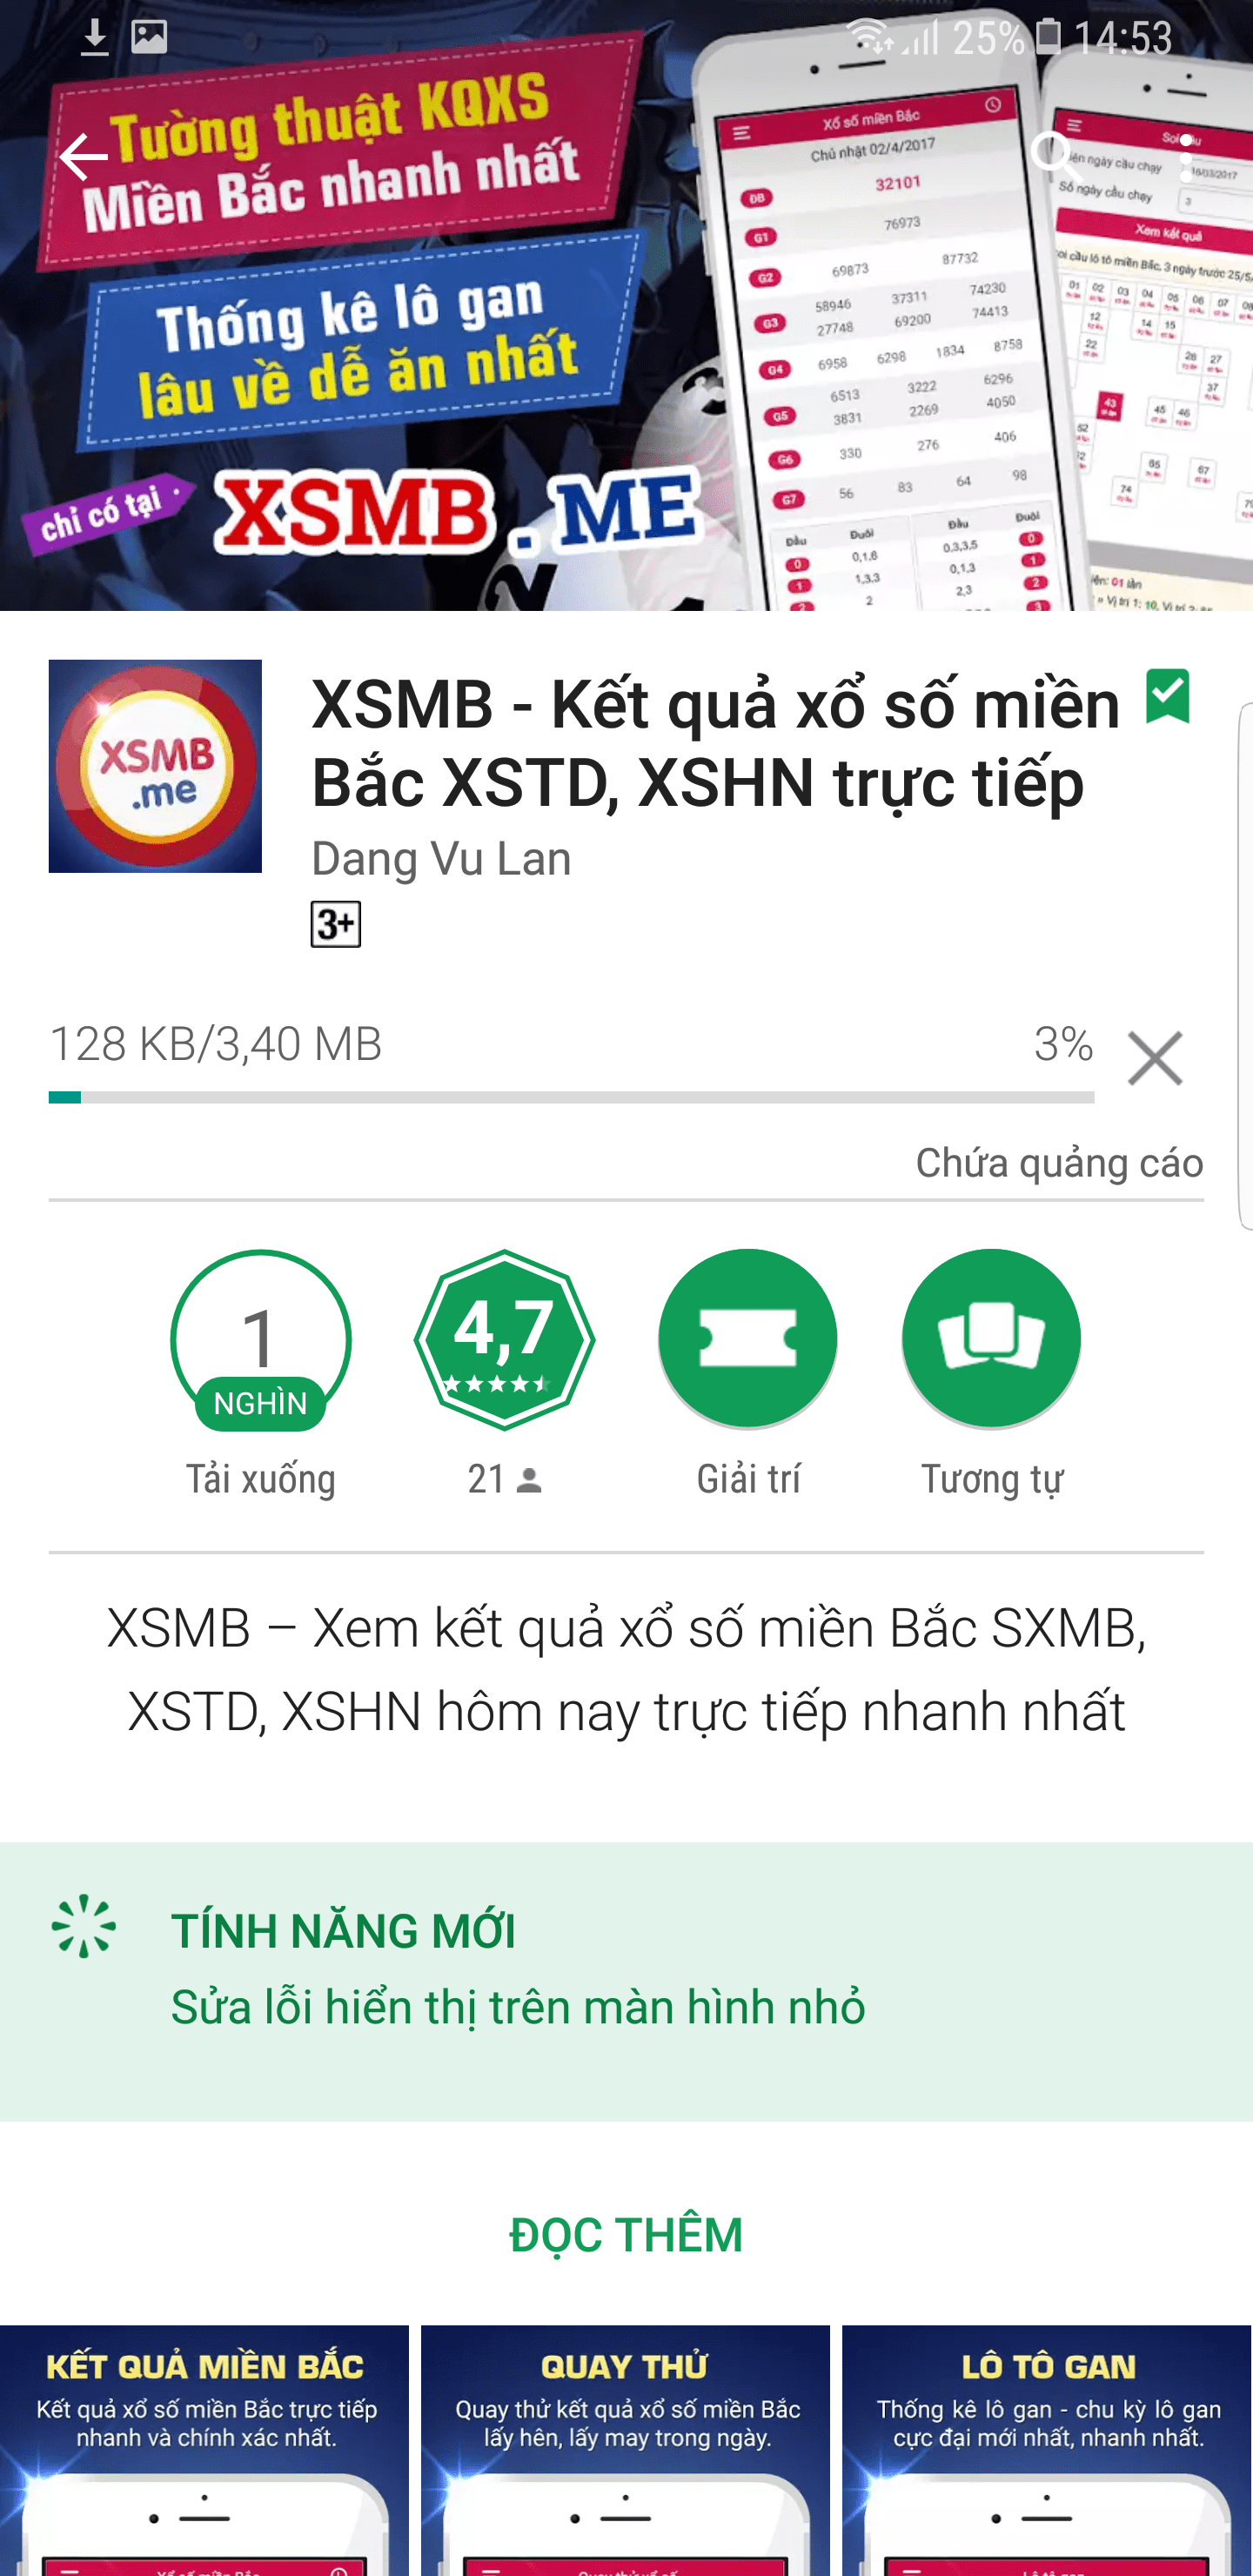 Chờ load xong rồi mở ứng dụng xsmb.me